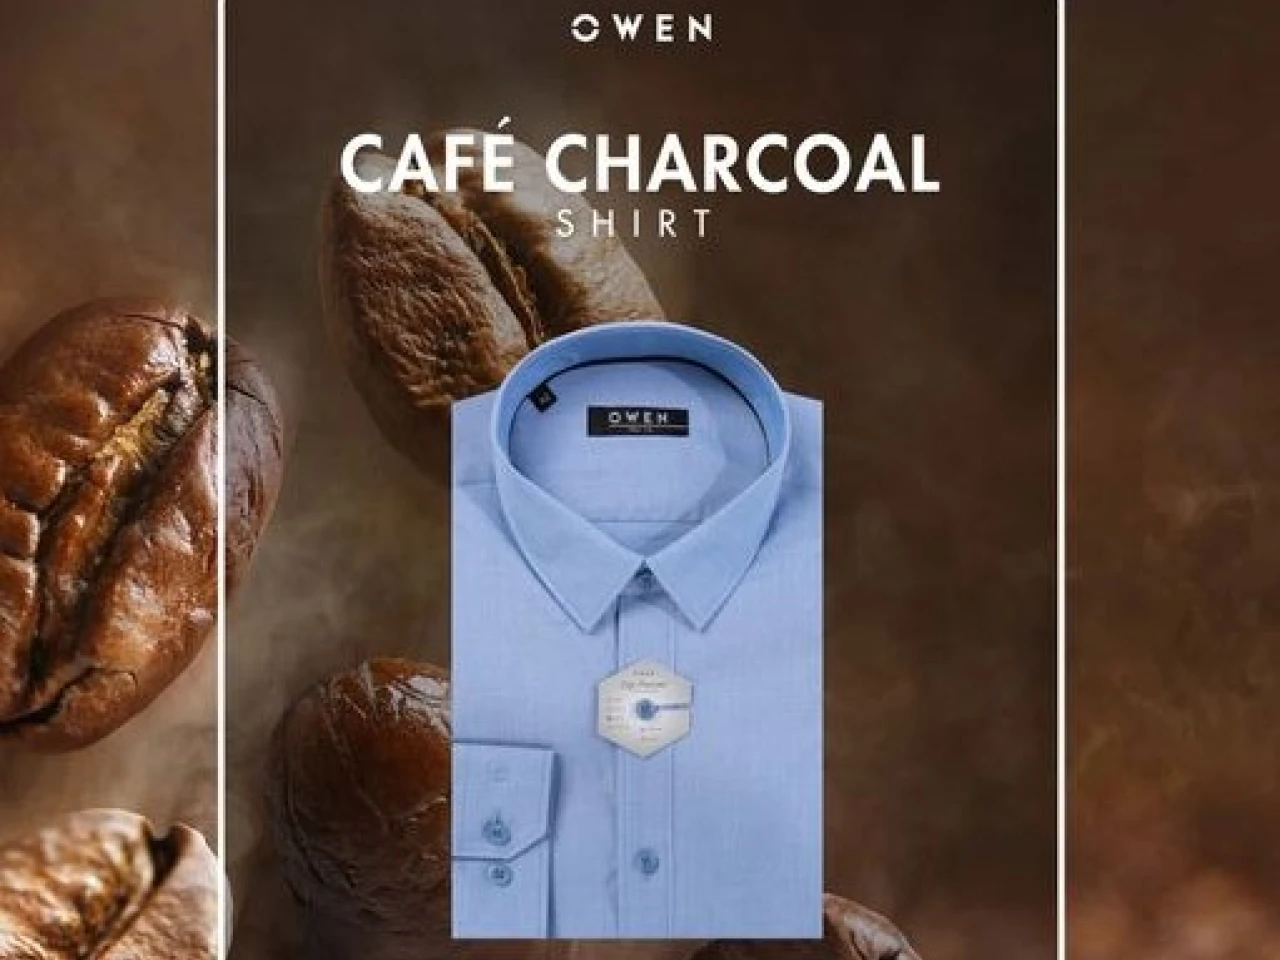 OWEN Thiết kế Sơ mi Cafe Charcoa, tiếp nguồn năng lượng cho cảm hứng mới